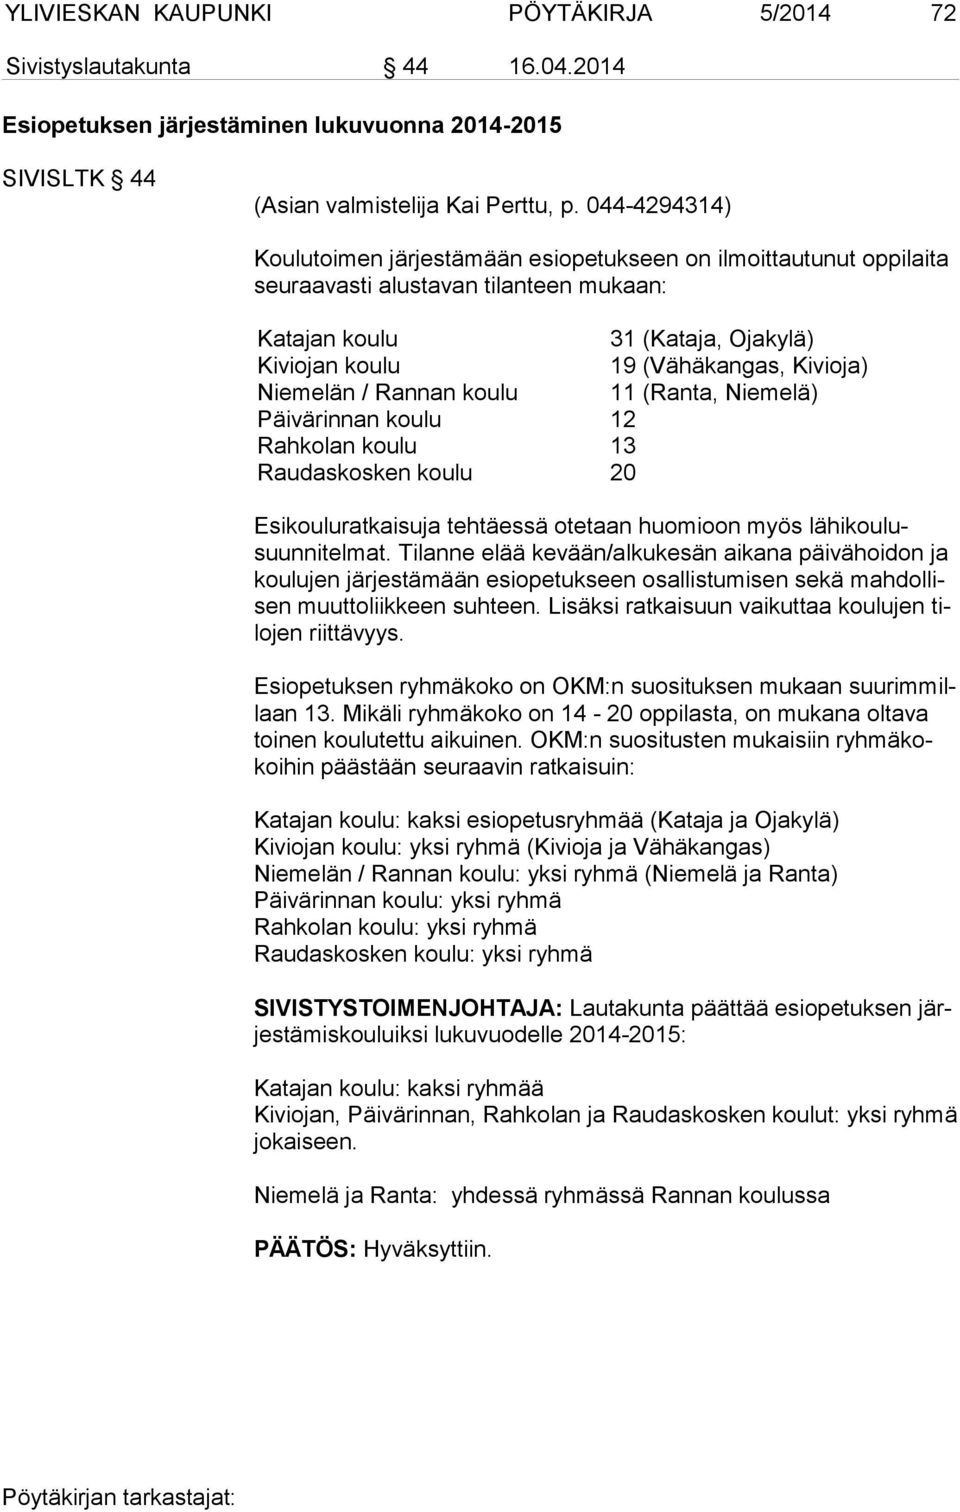 Niemelän / Rannan koulu 11 (Ranta, Niemelä) Päivärinnan koulu 12 Rahkolan koulu 13 Raudaskosken koulu 20 Esikouluratkaisuja tehtäessä otetaan huomioon myös lähikoulusuunnitelmat.